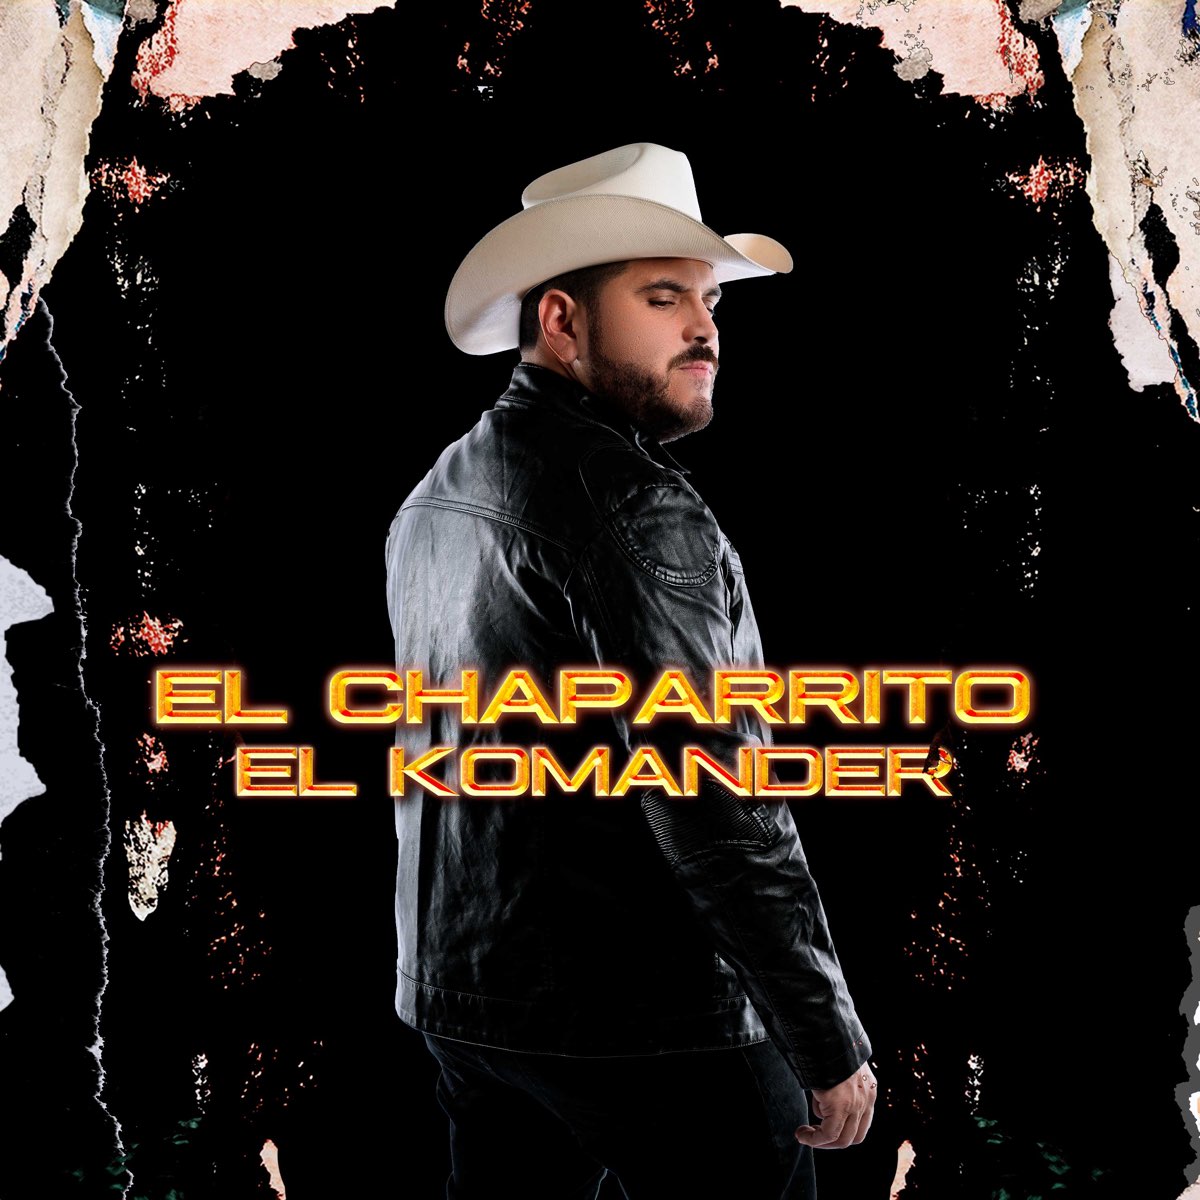 El Chaparrito - Single by El Komander on Apple Music